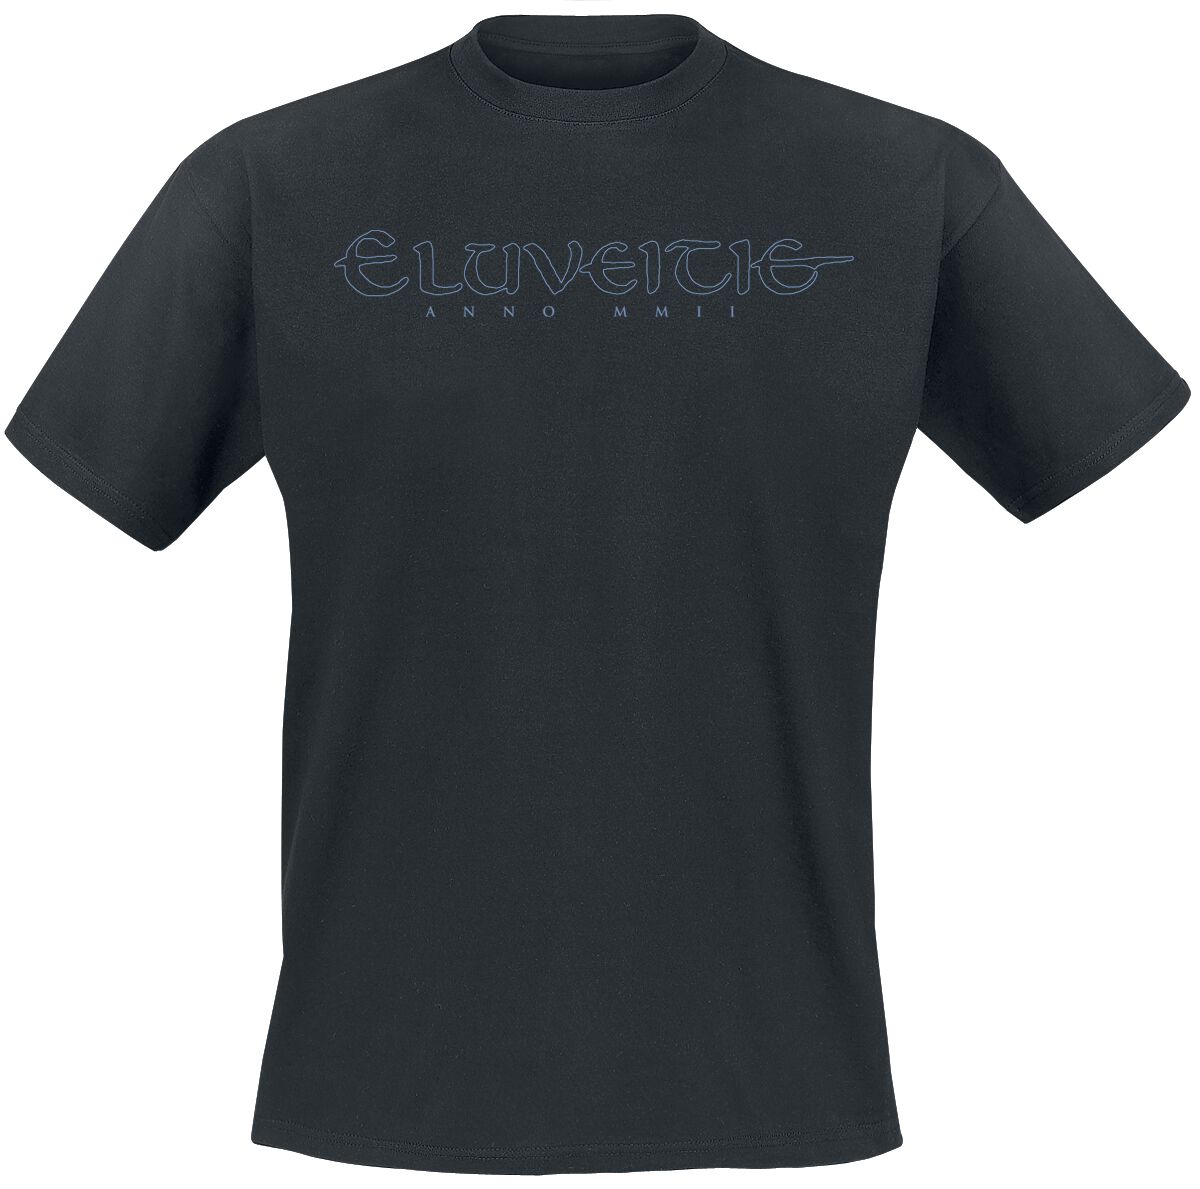 Eluveitie T-Shirt - Triskel - S bis M - für Männer - Größe S - schwarz  - Lizenziertes Merchandise!